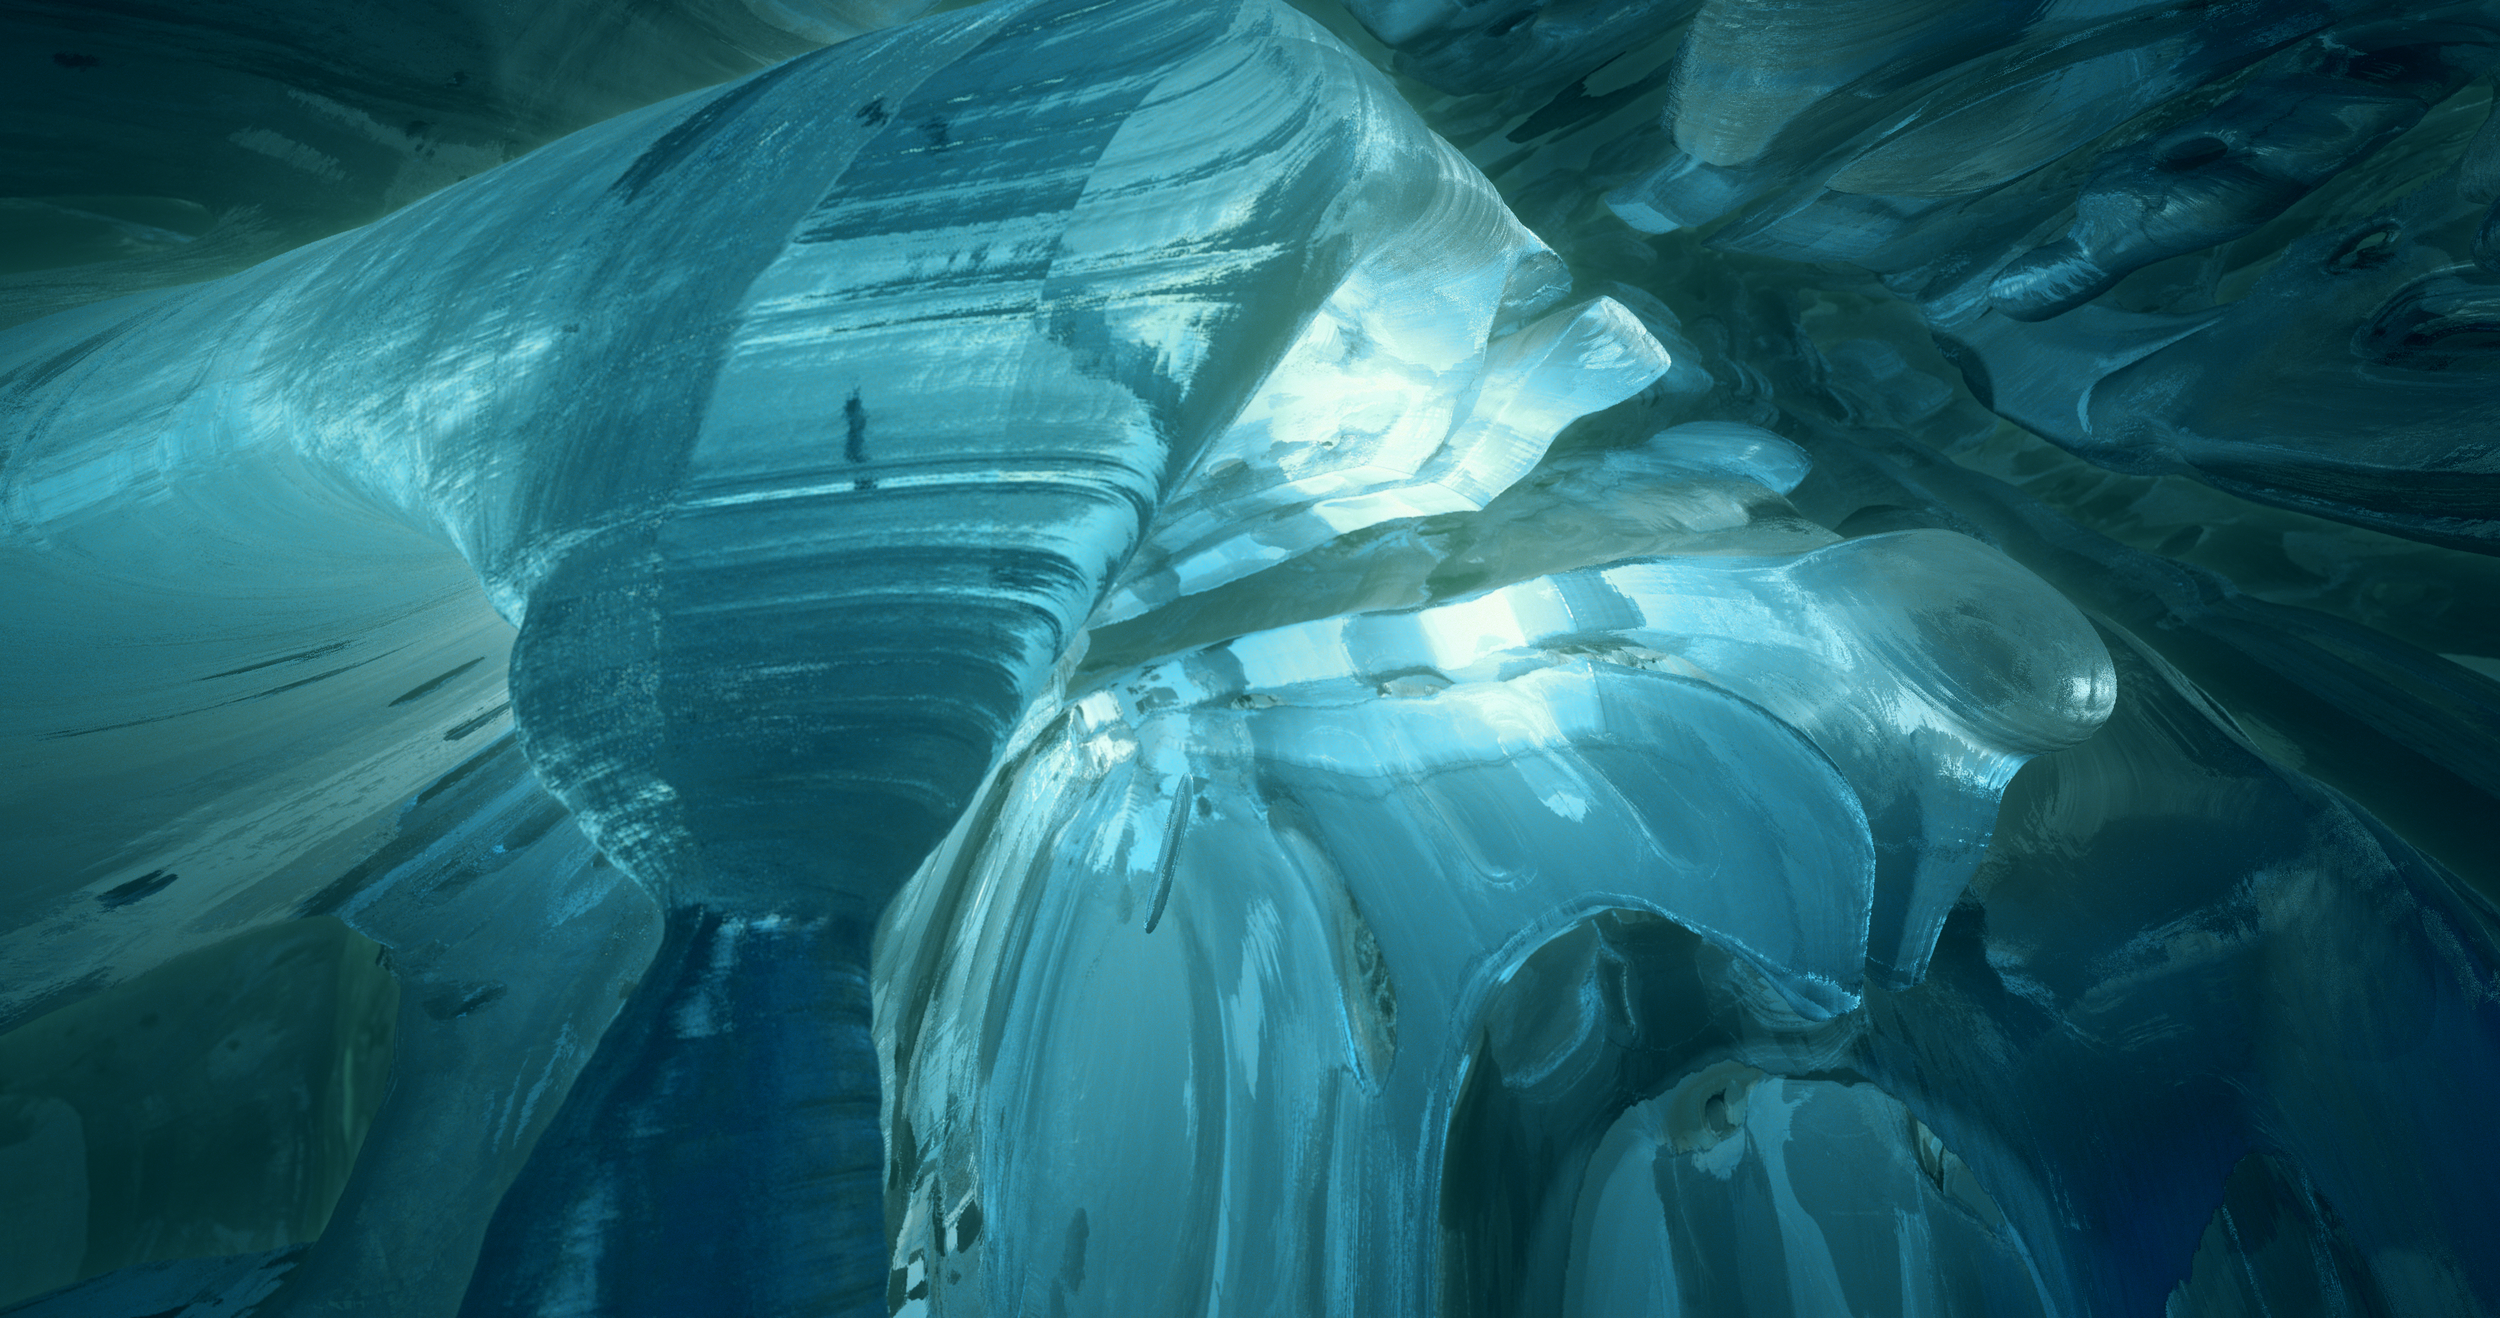 Ice Caves 4096 x 2160